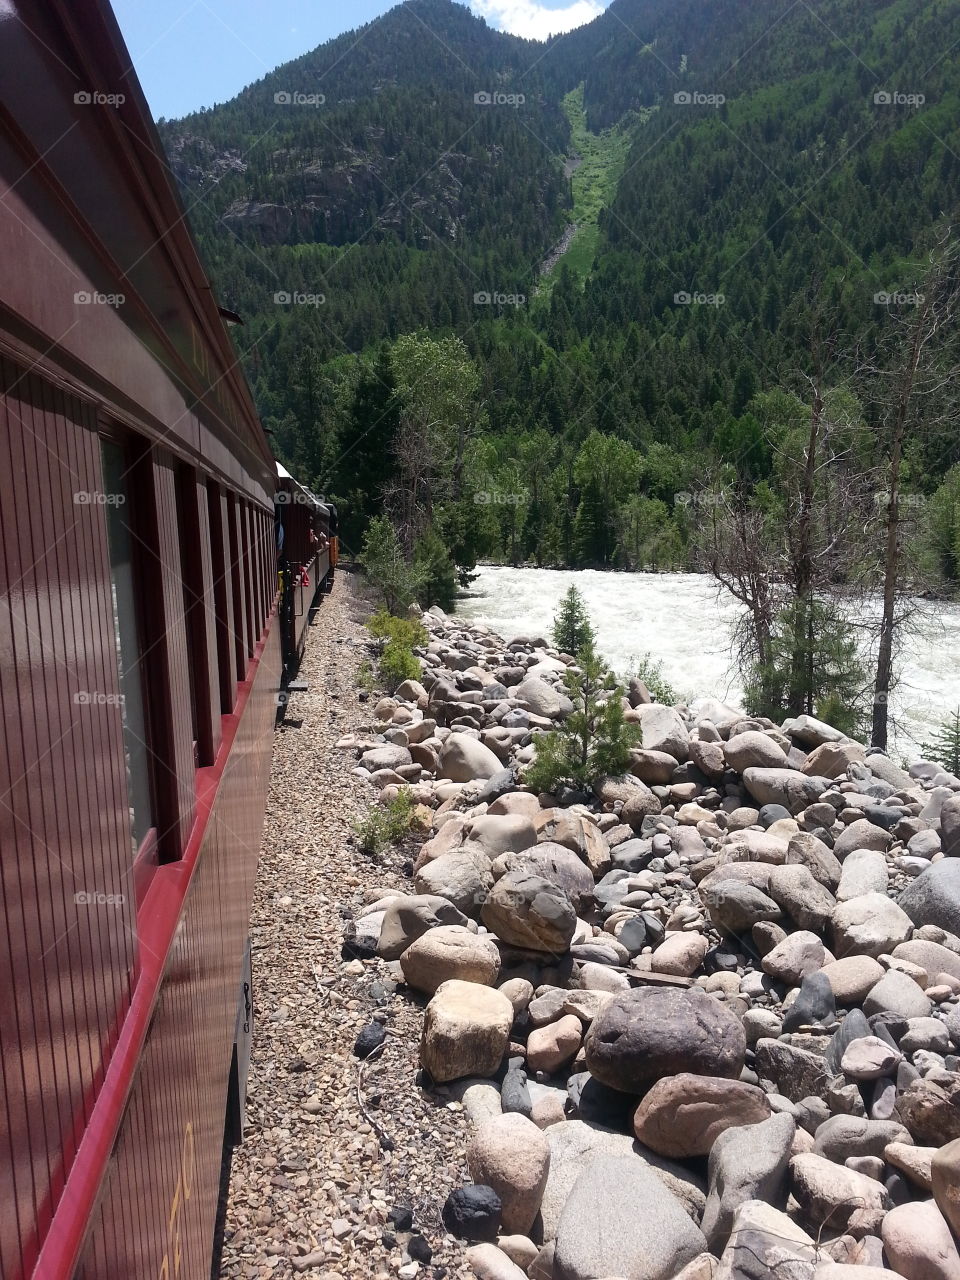 train ride through the mountains